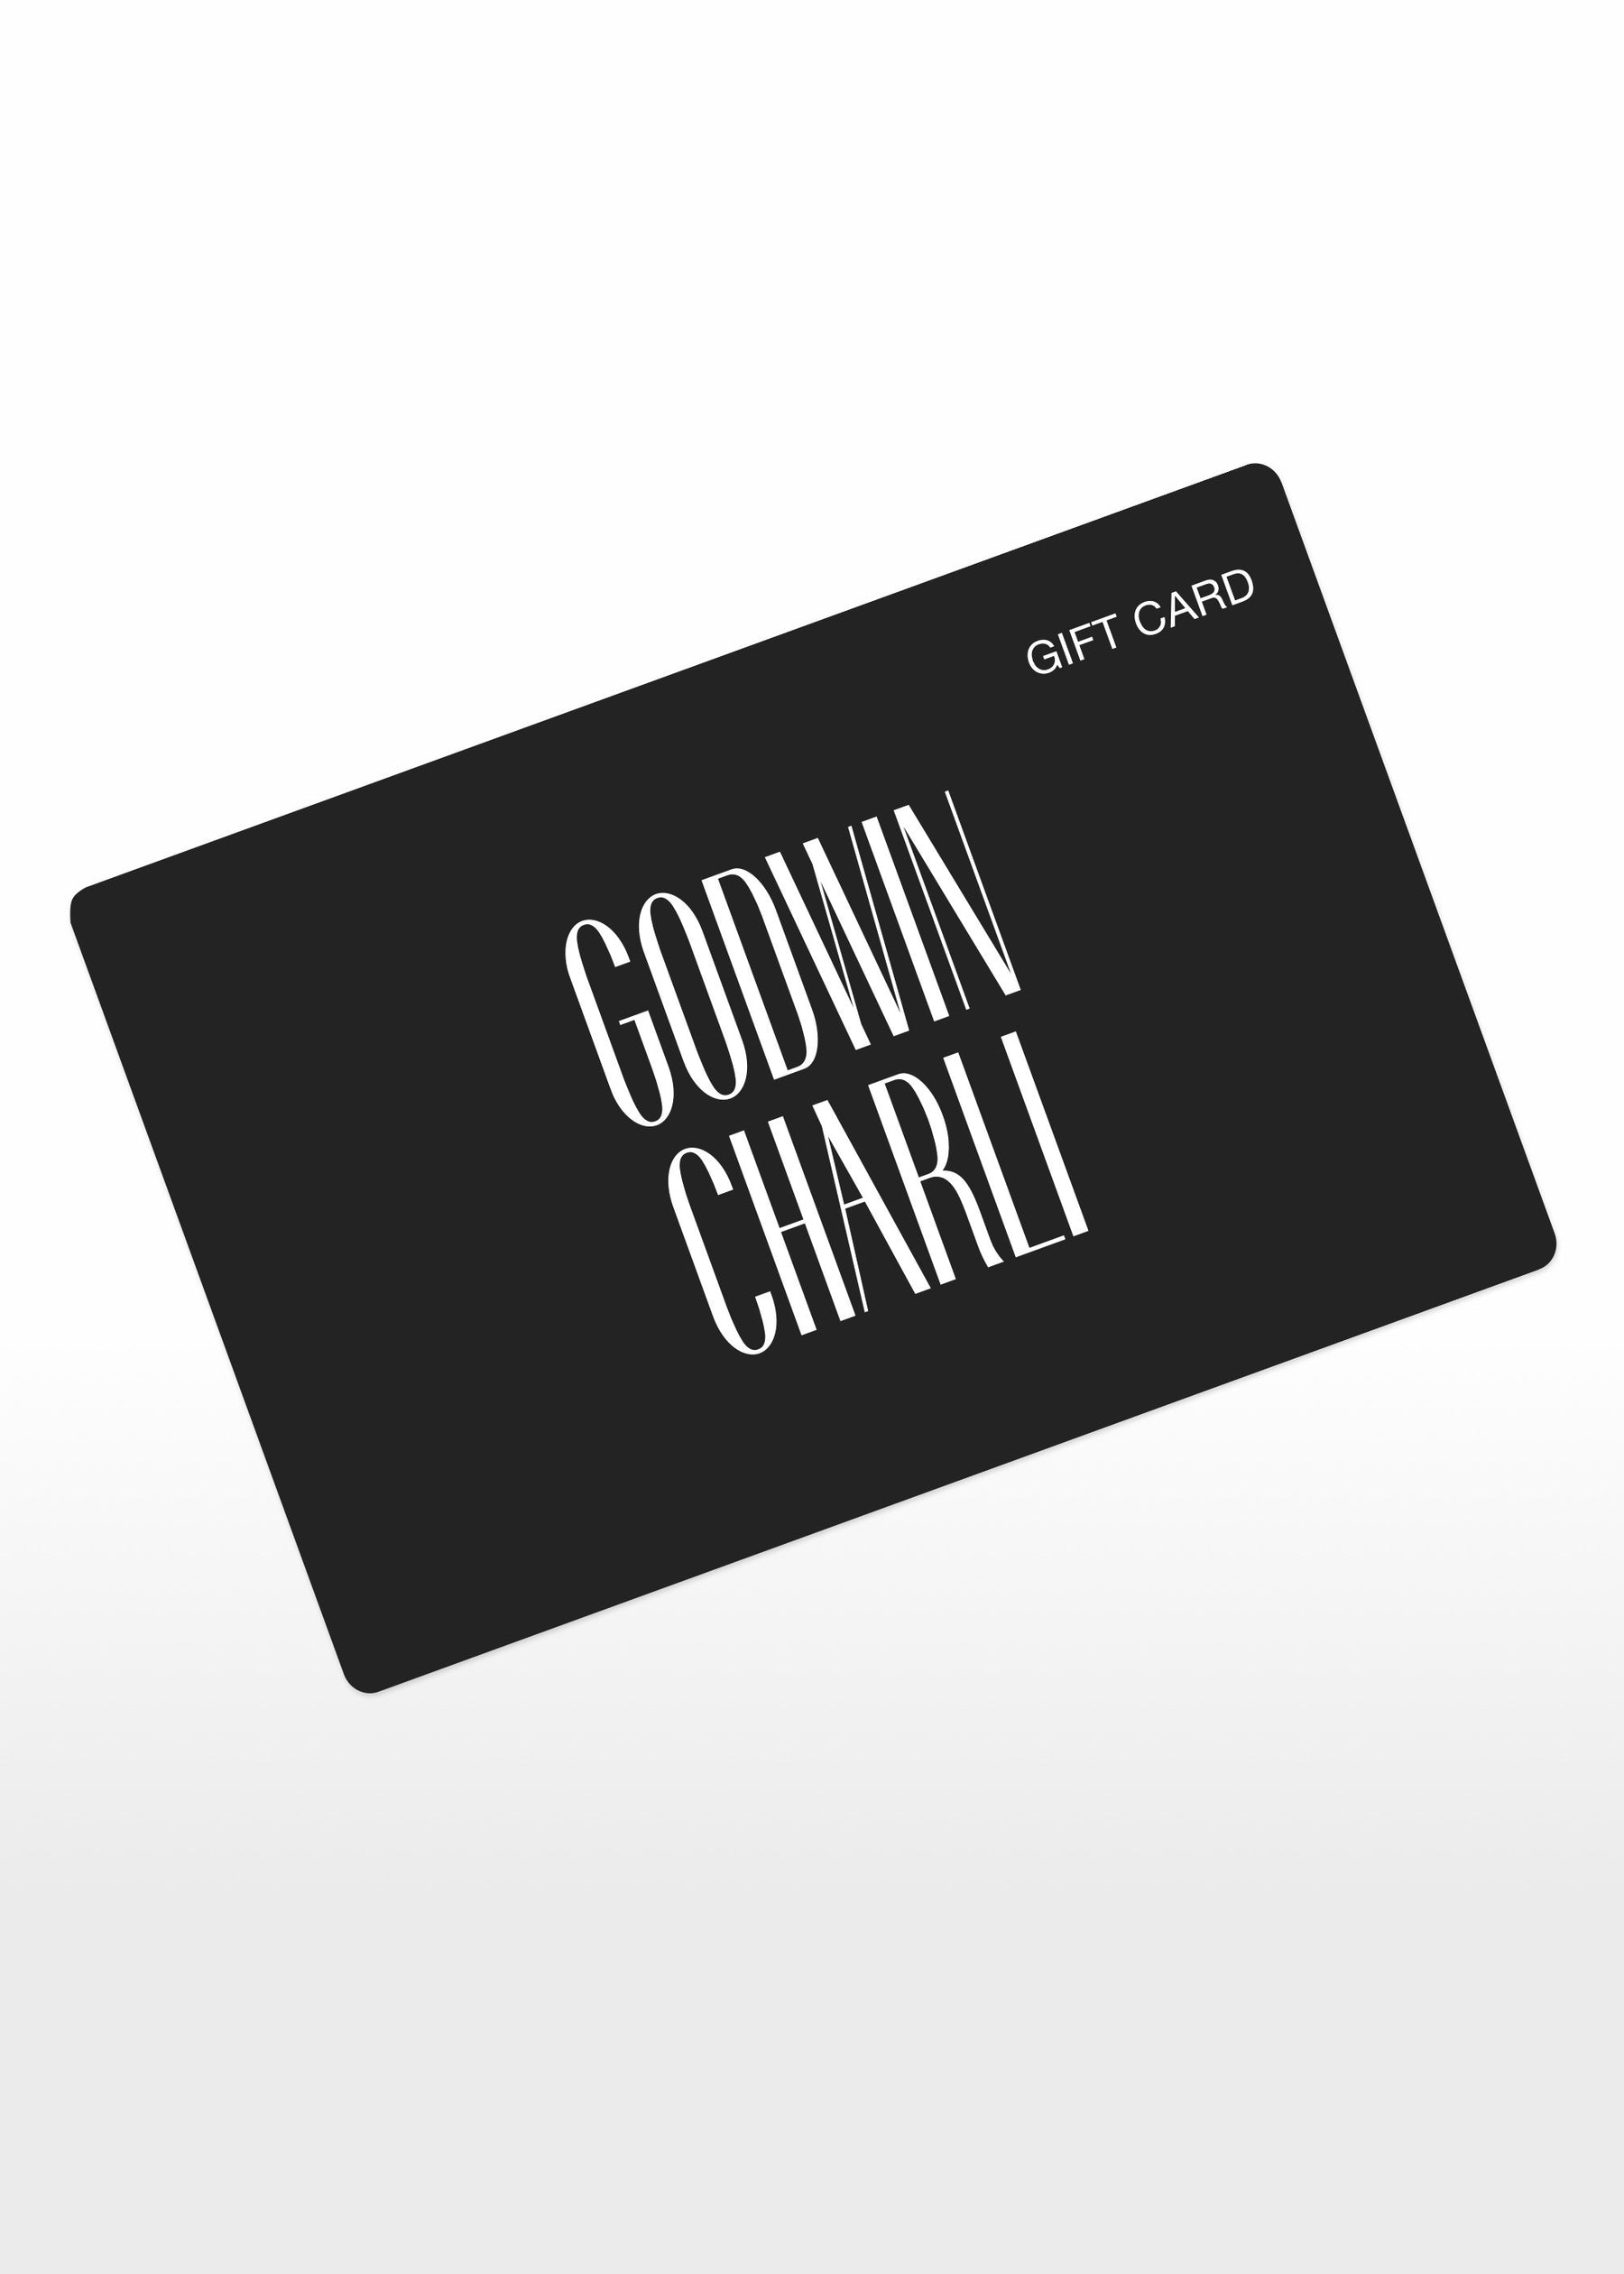 Godwin Charli Gift Card